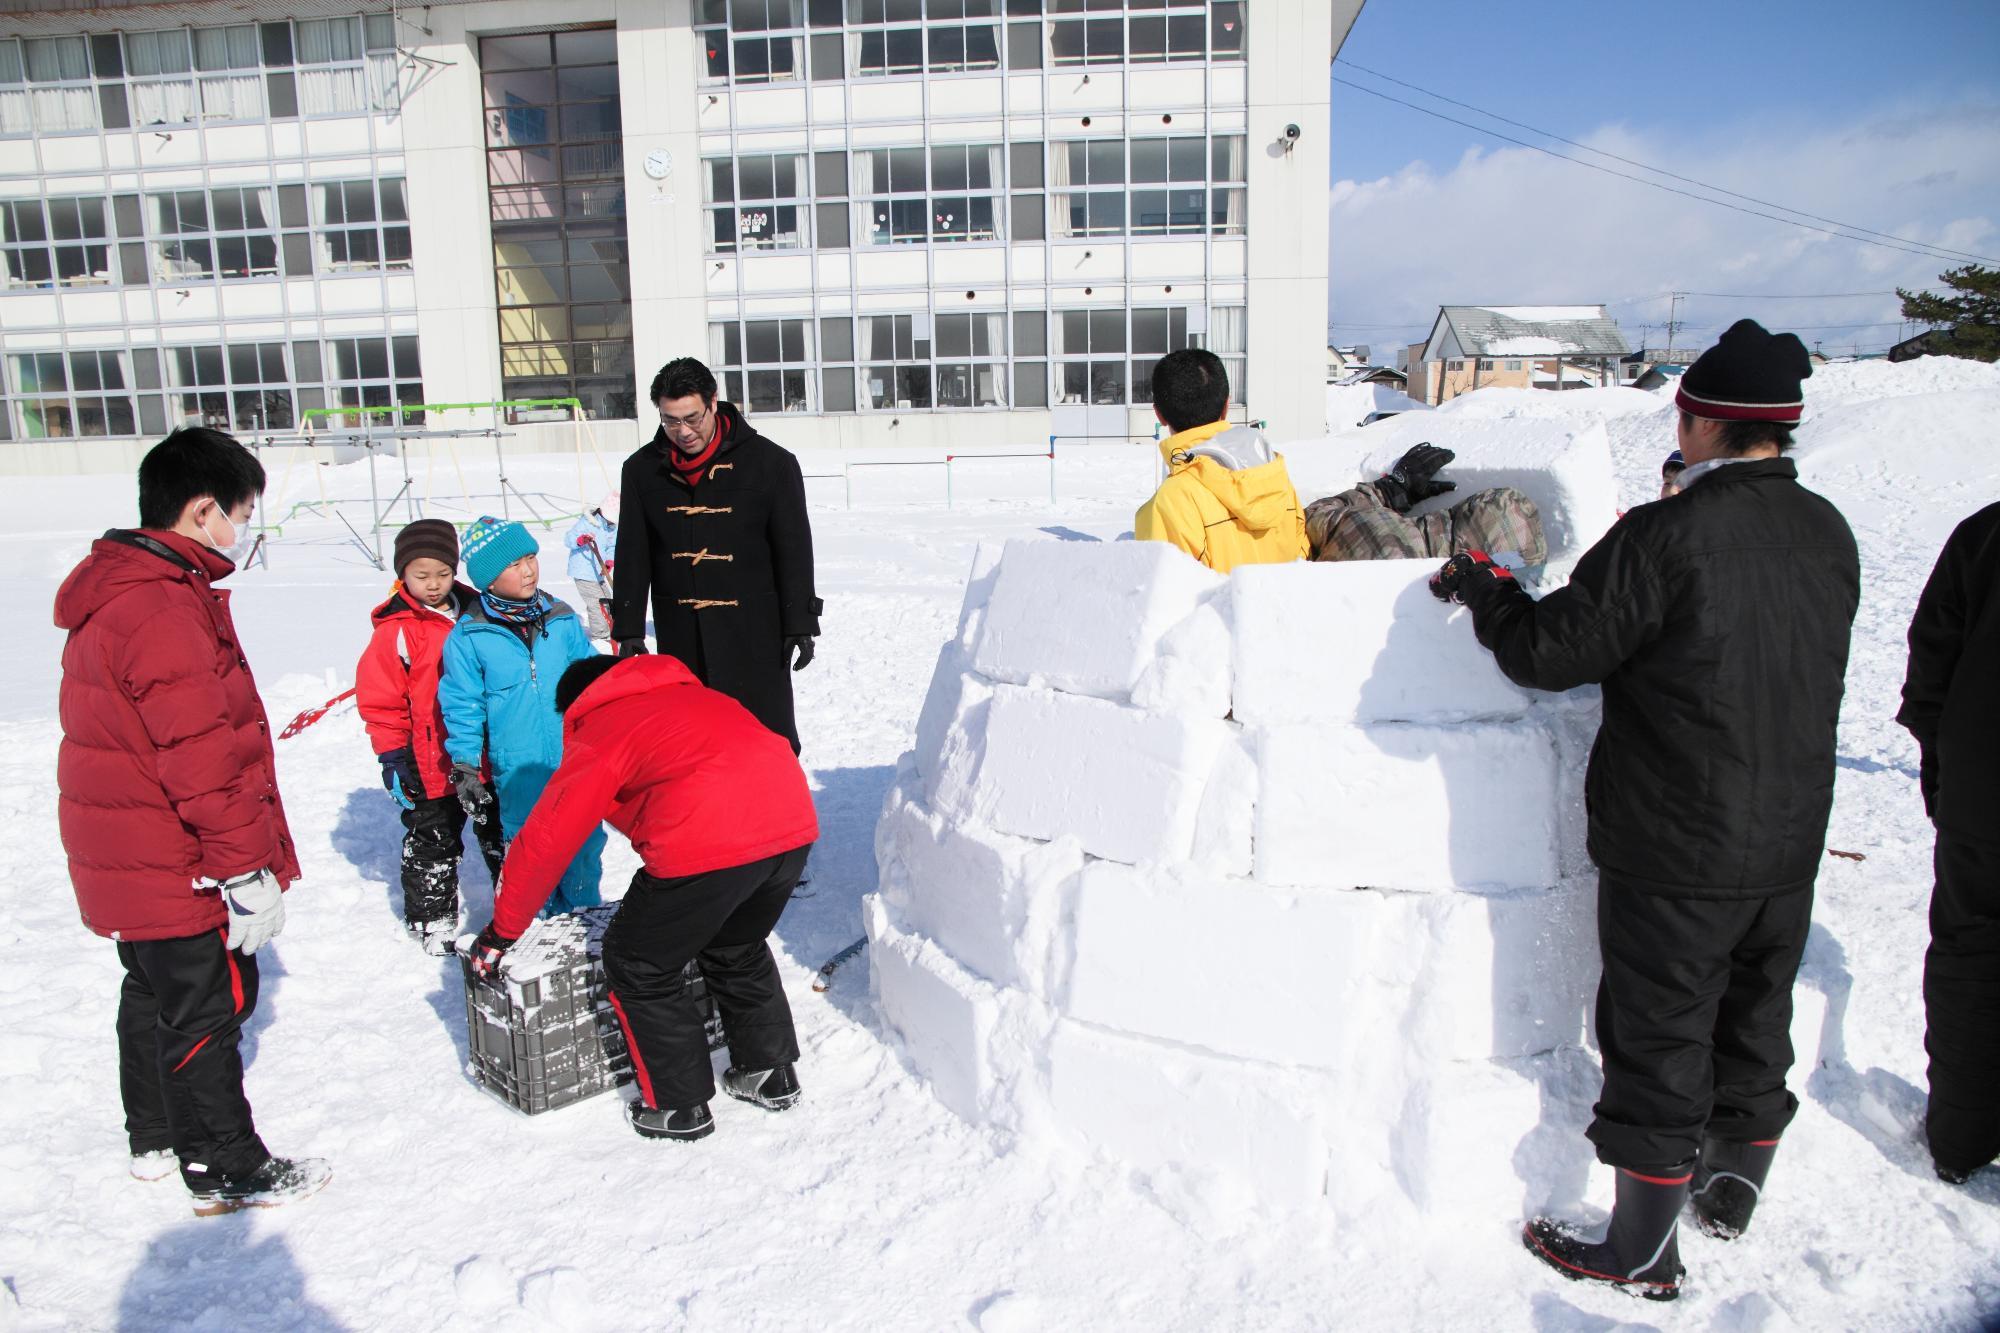 雪が積もった学校の校庭で、大人2人と子ども6人が四角い雪の塊を積み上げてイグルーを作っている写真